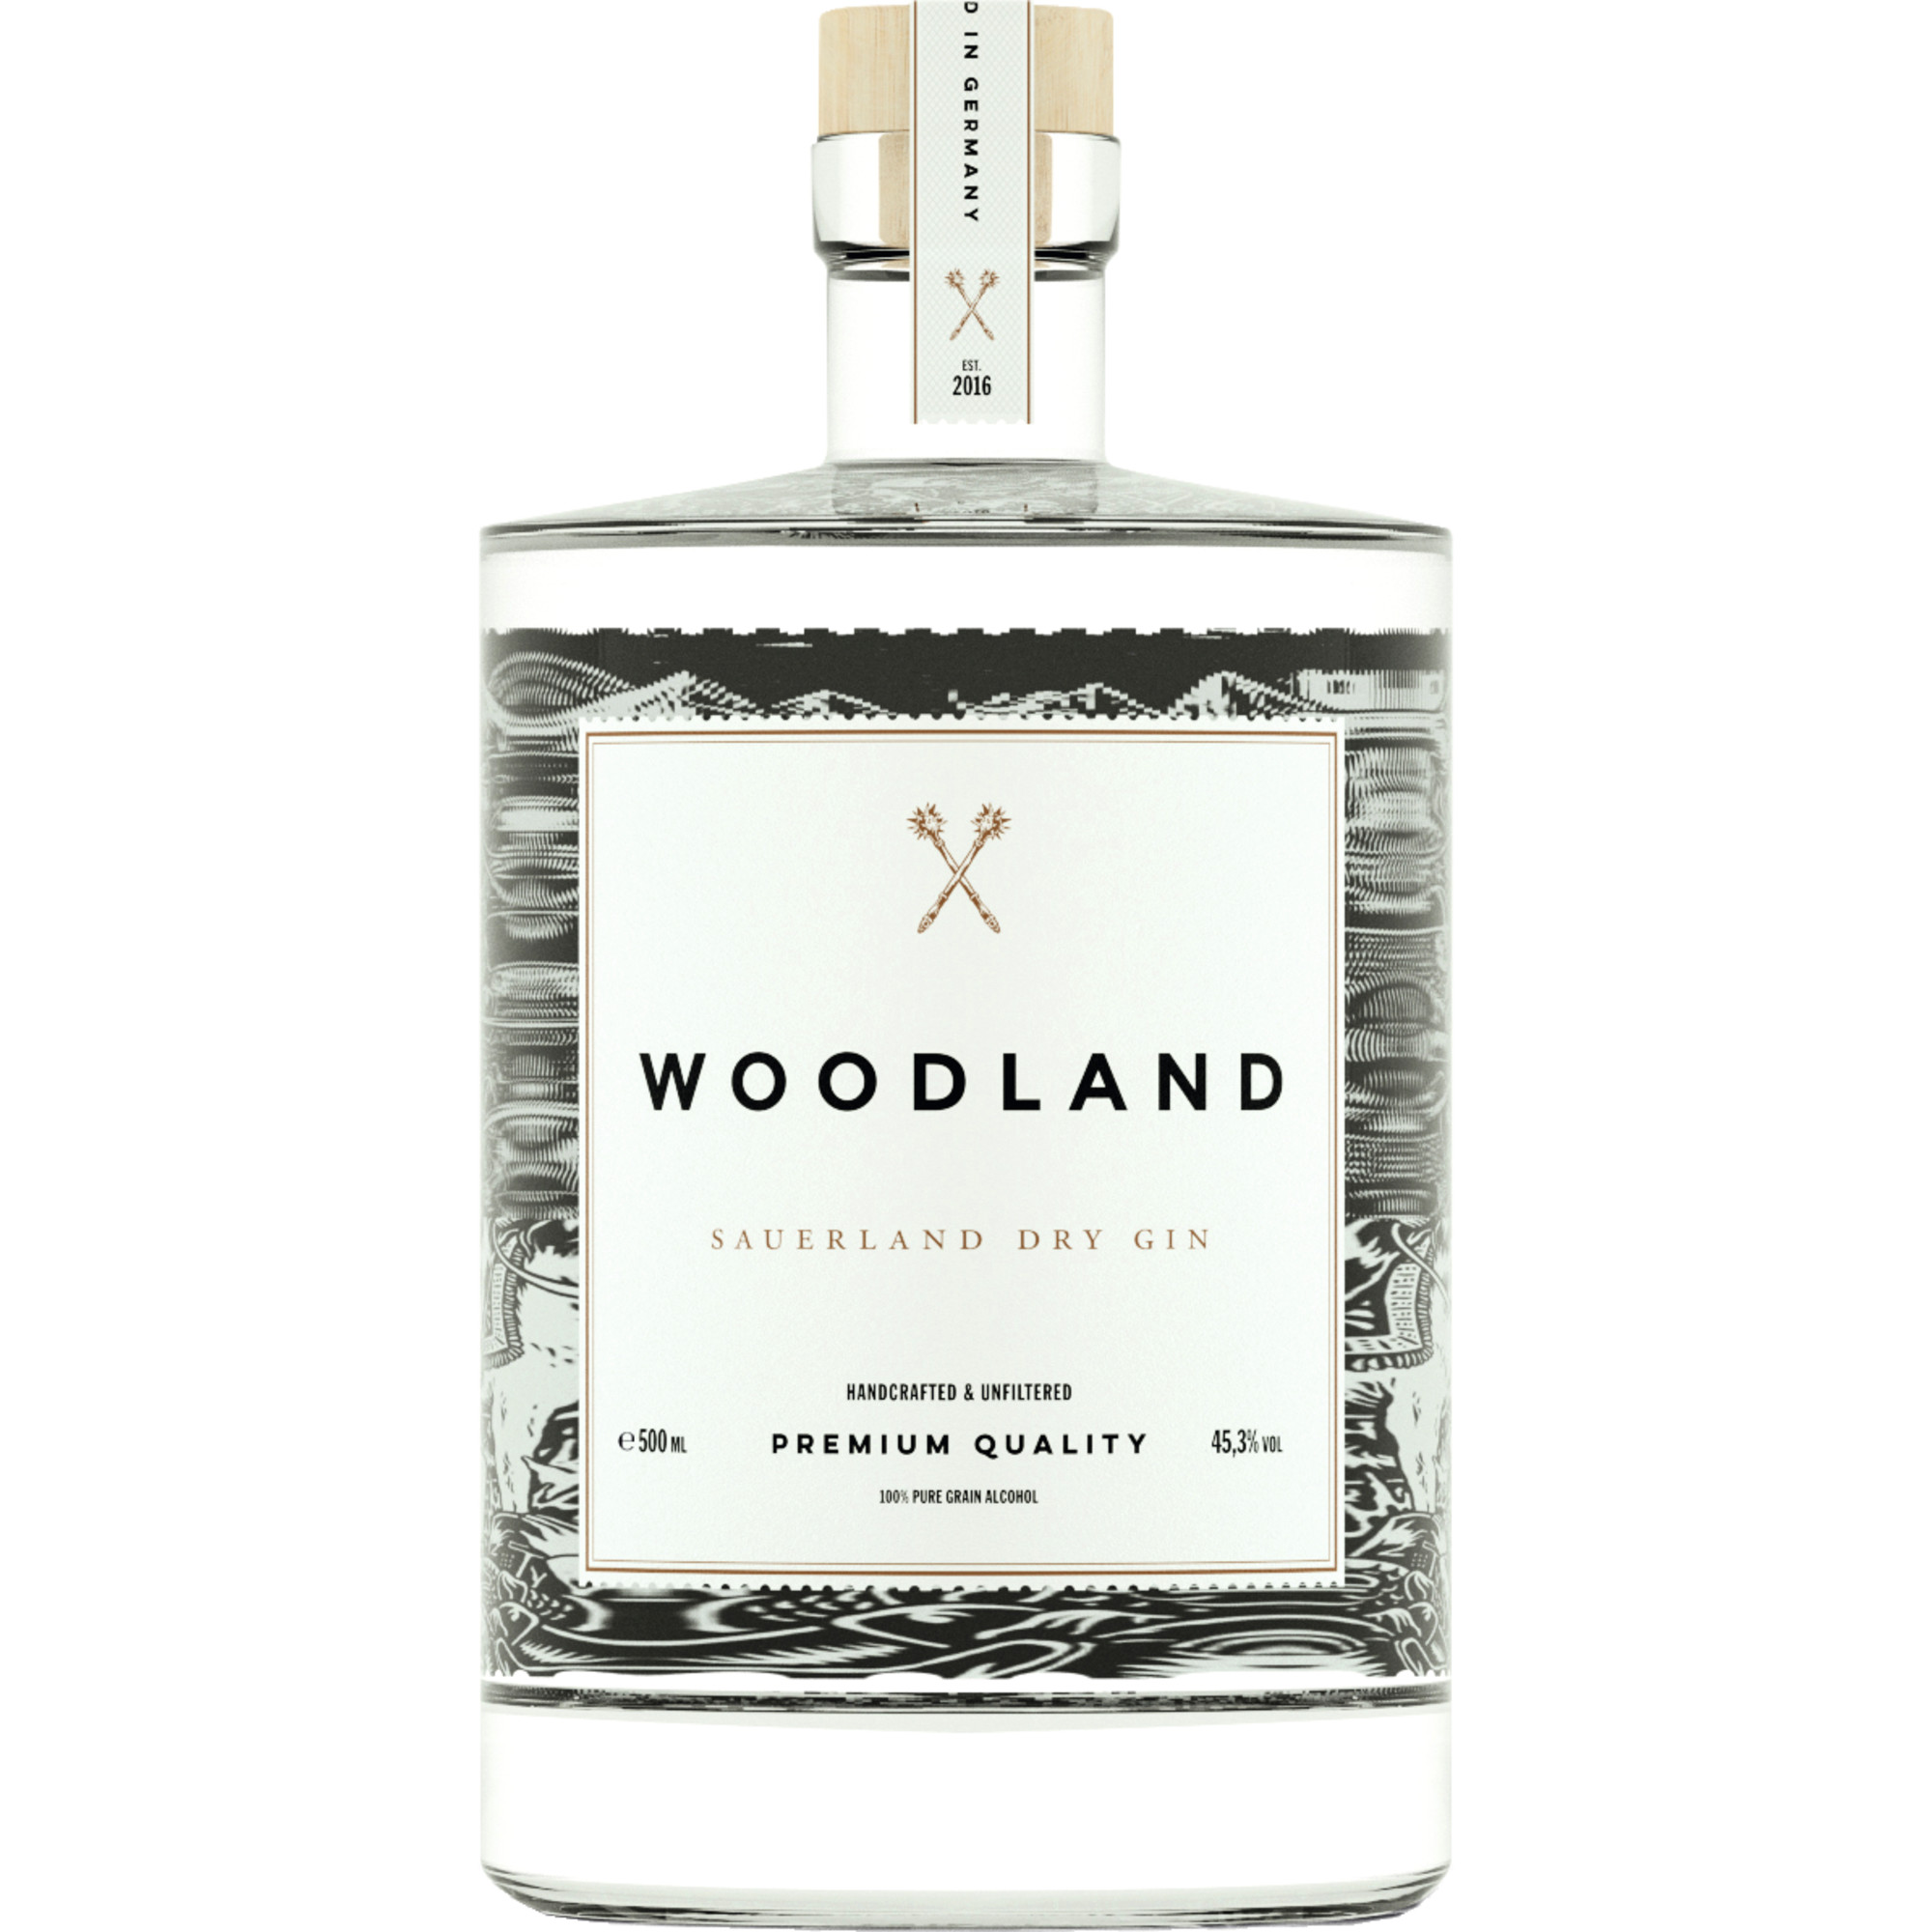 Woodland Sauerland Dry Gin, 45,3 % vol. 0,5 L, Spirituosen  Spirituosen Hawesko